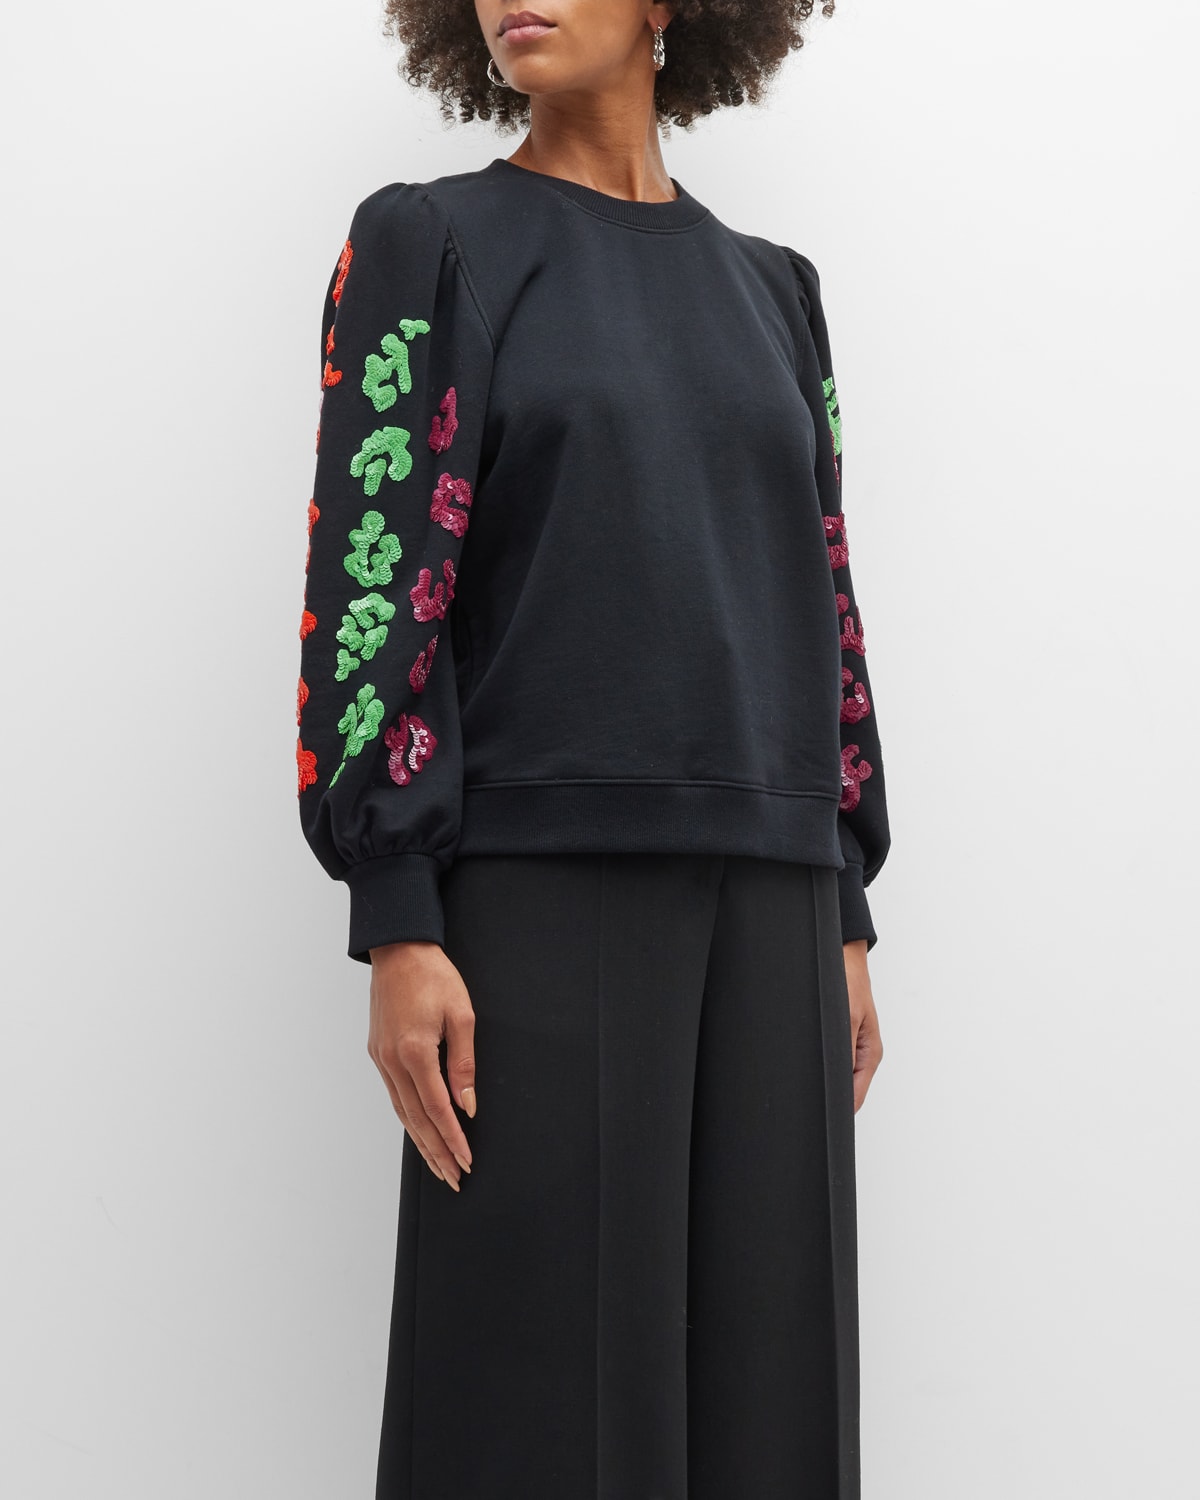 Christobald Embellished-Sleeve Sweatshirt